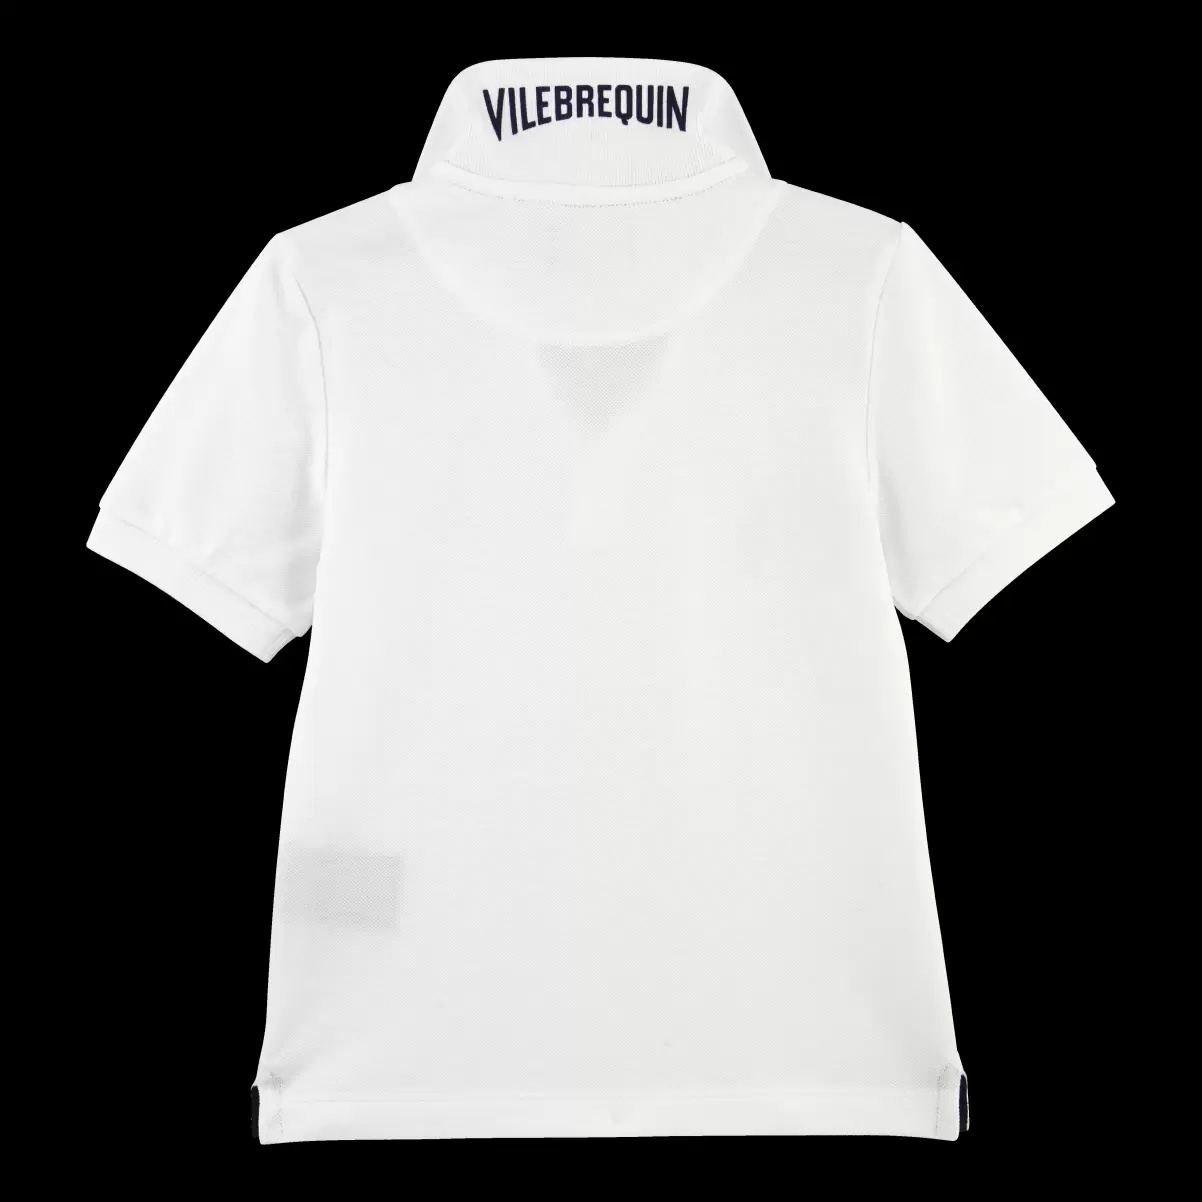 Weiss / Weiss Verbraucher Solid Polohemd Aus Baumwollpikee Mit Changierendem Effekt Für Jungen Polohemden Vilebrequin Jungen - 1